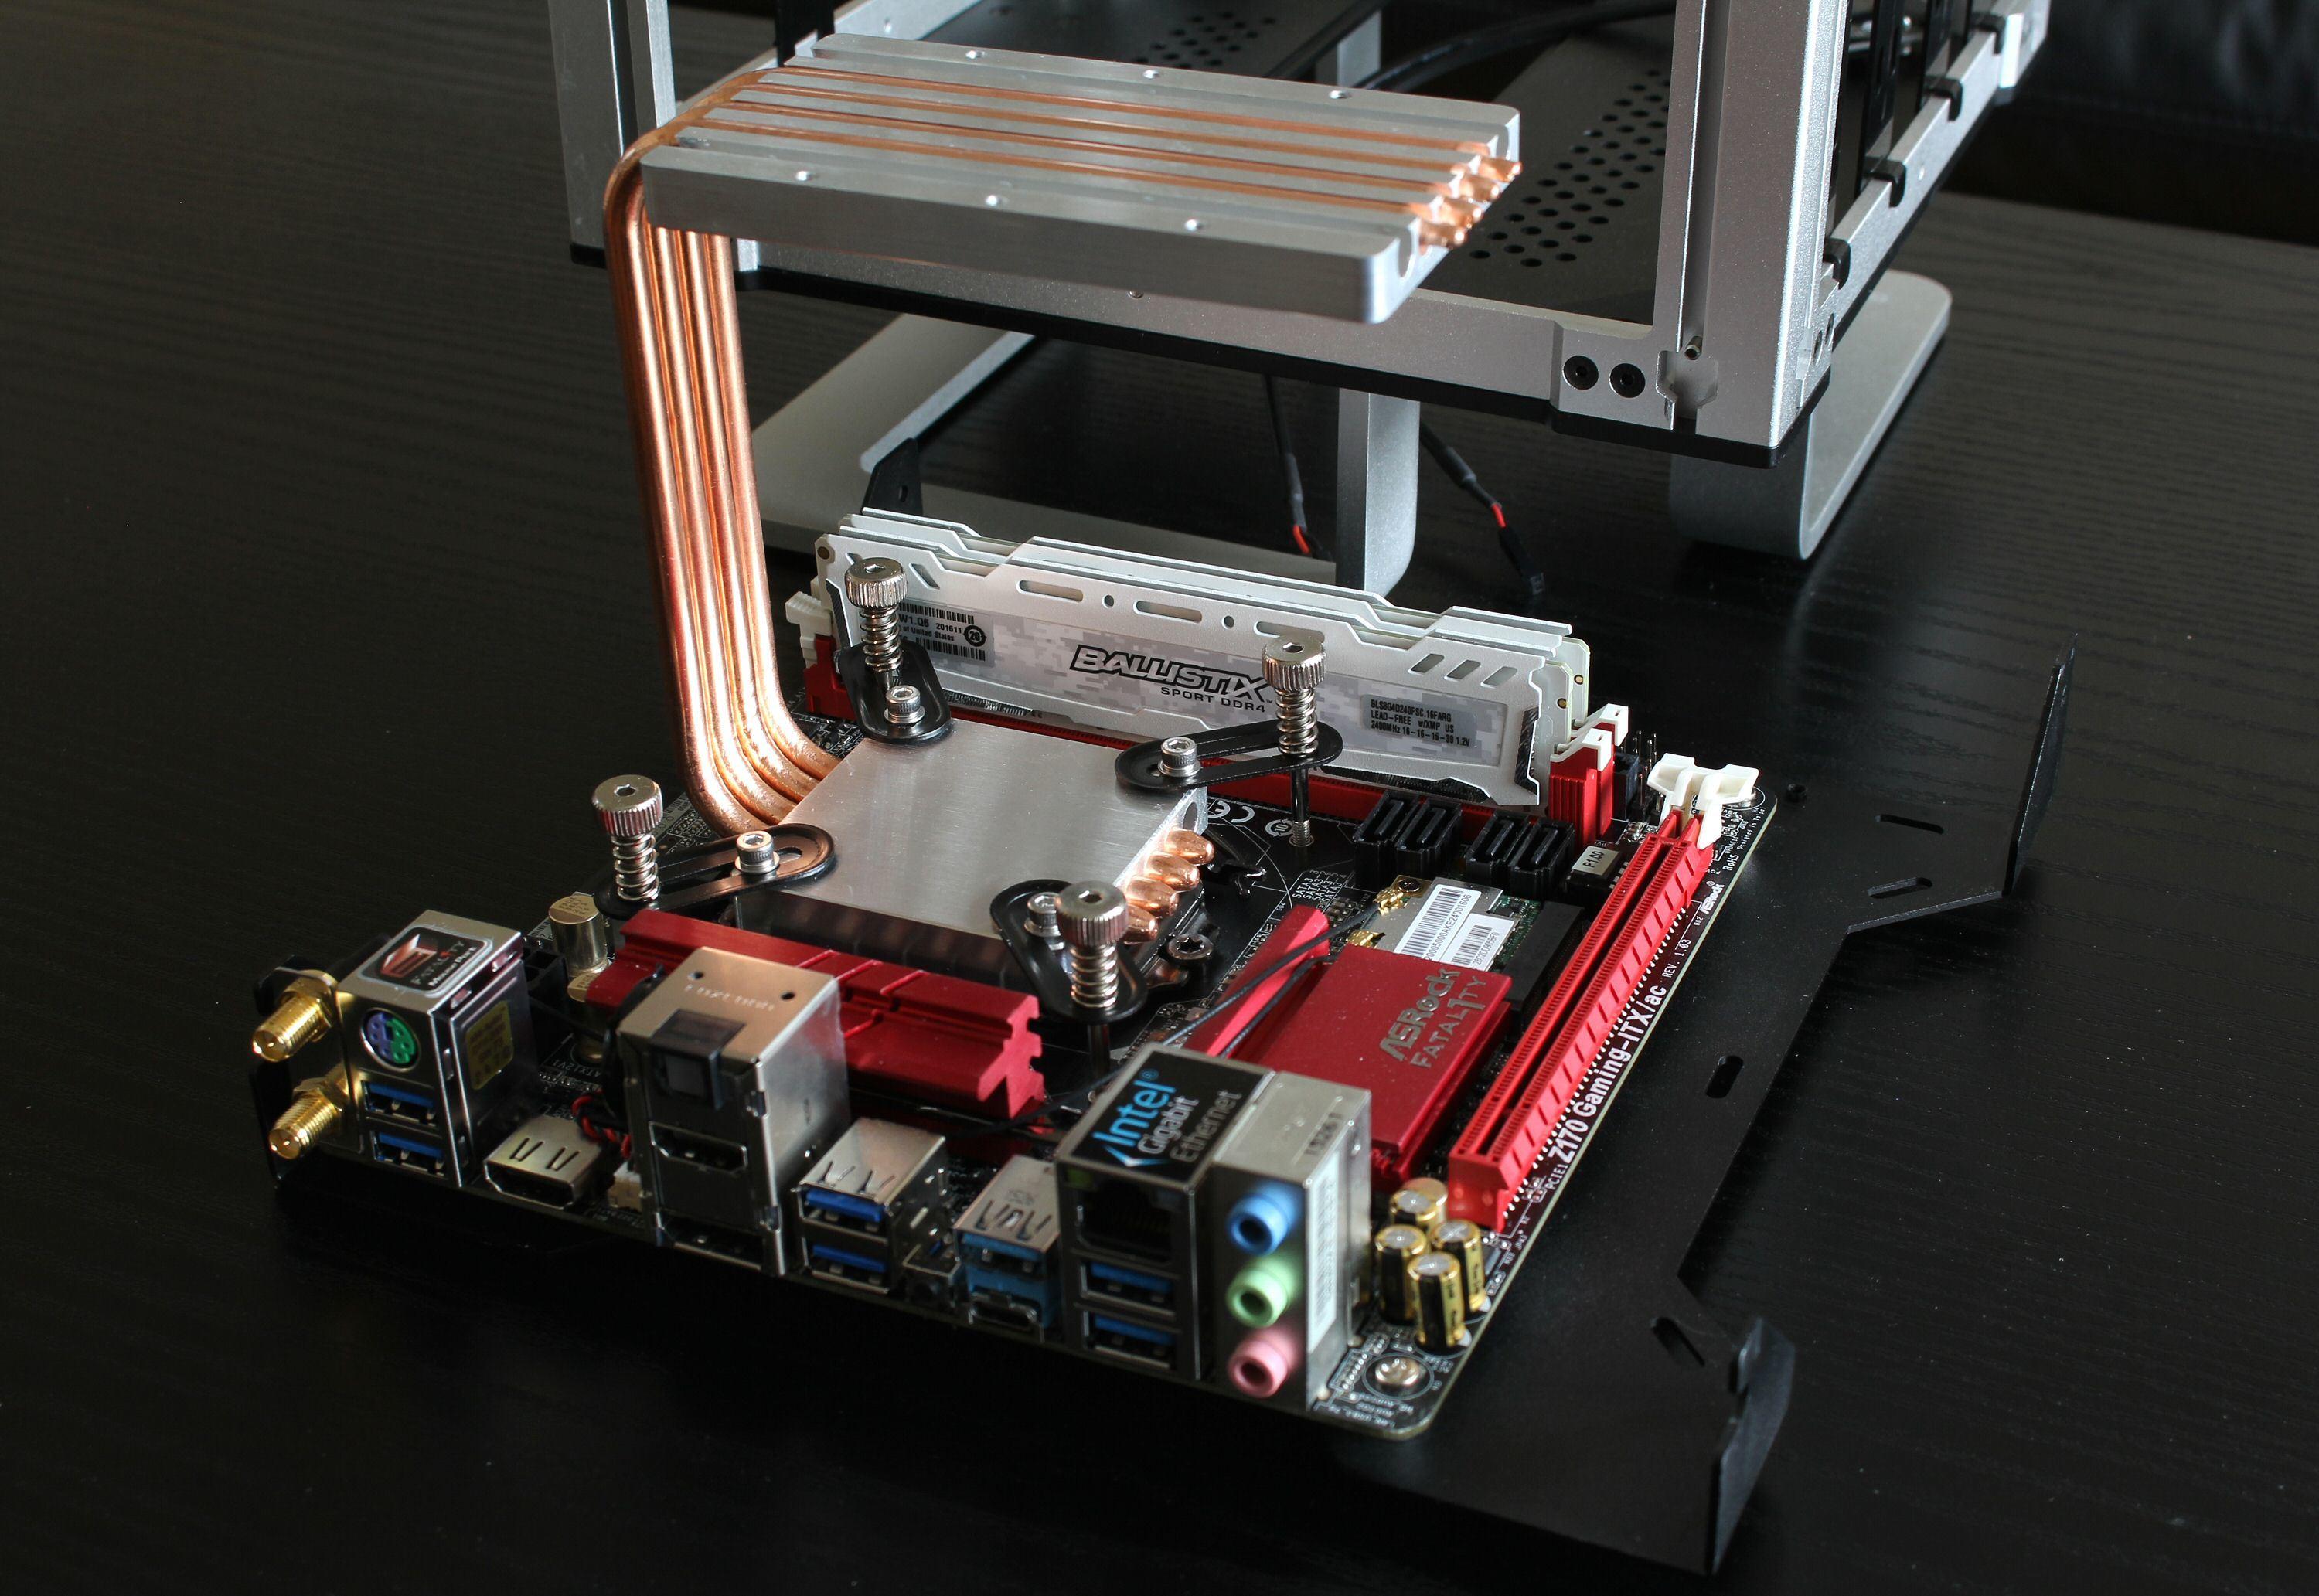 Her er kjøleløsningen med fire varmerør montert på CPU-en. Hovedkortet er skrudd fast i en plate som nå enkelt kan festes i kabinettet.